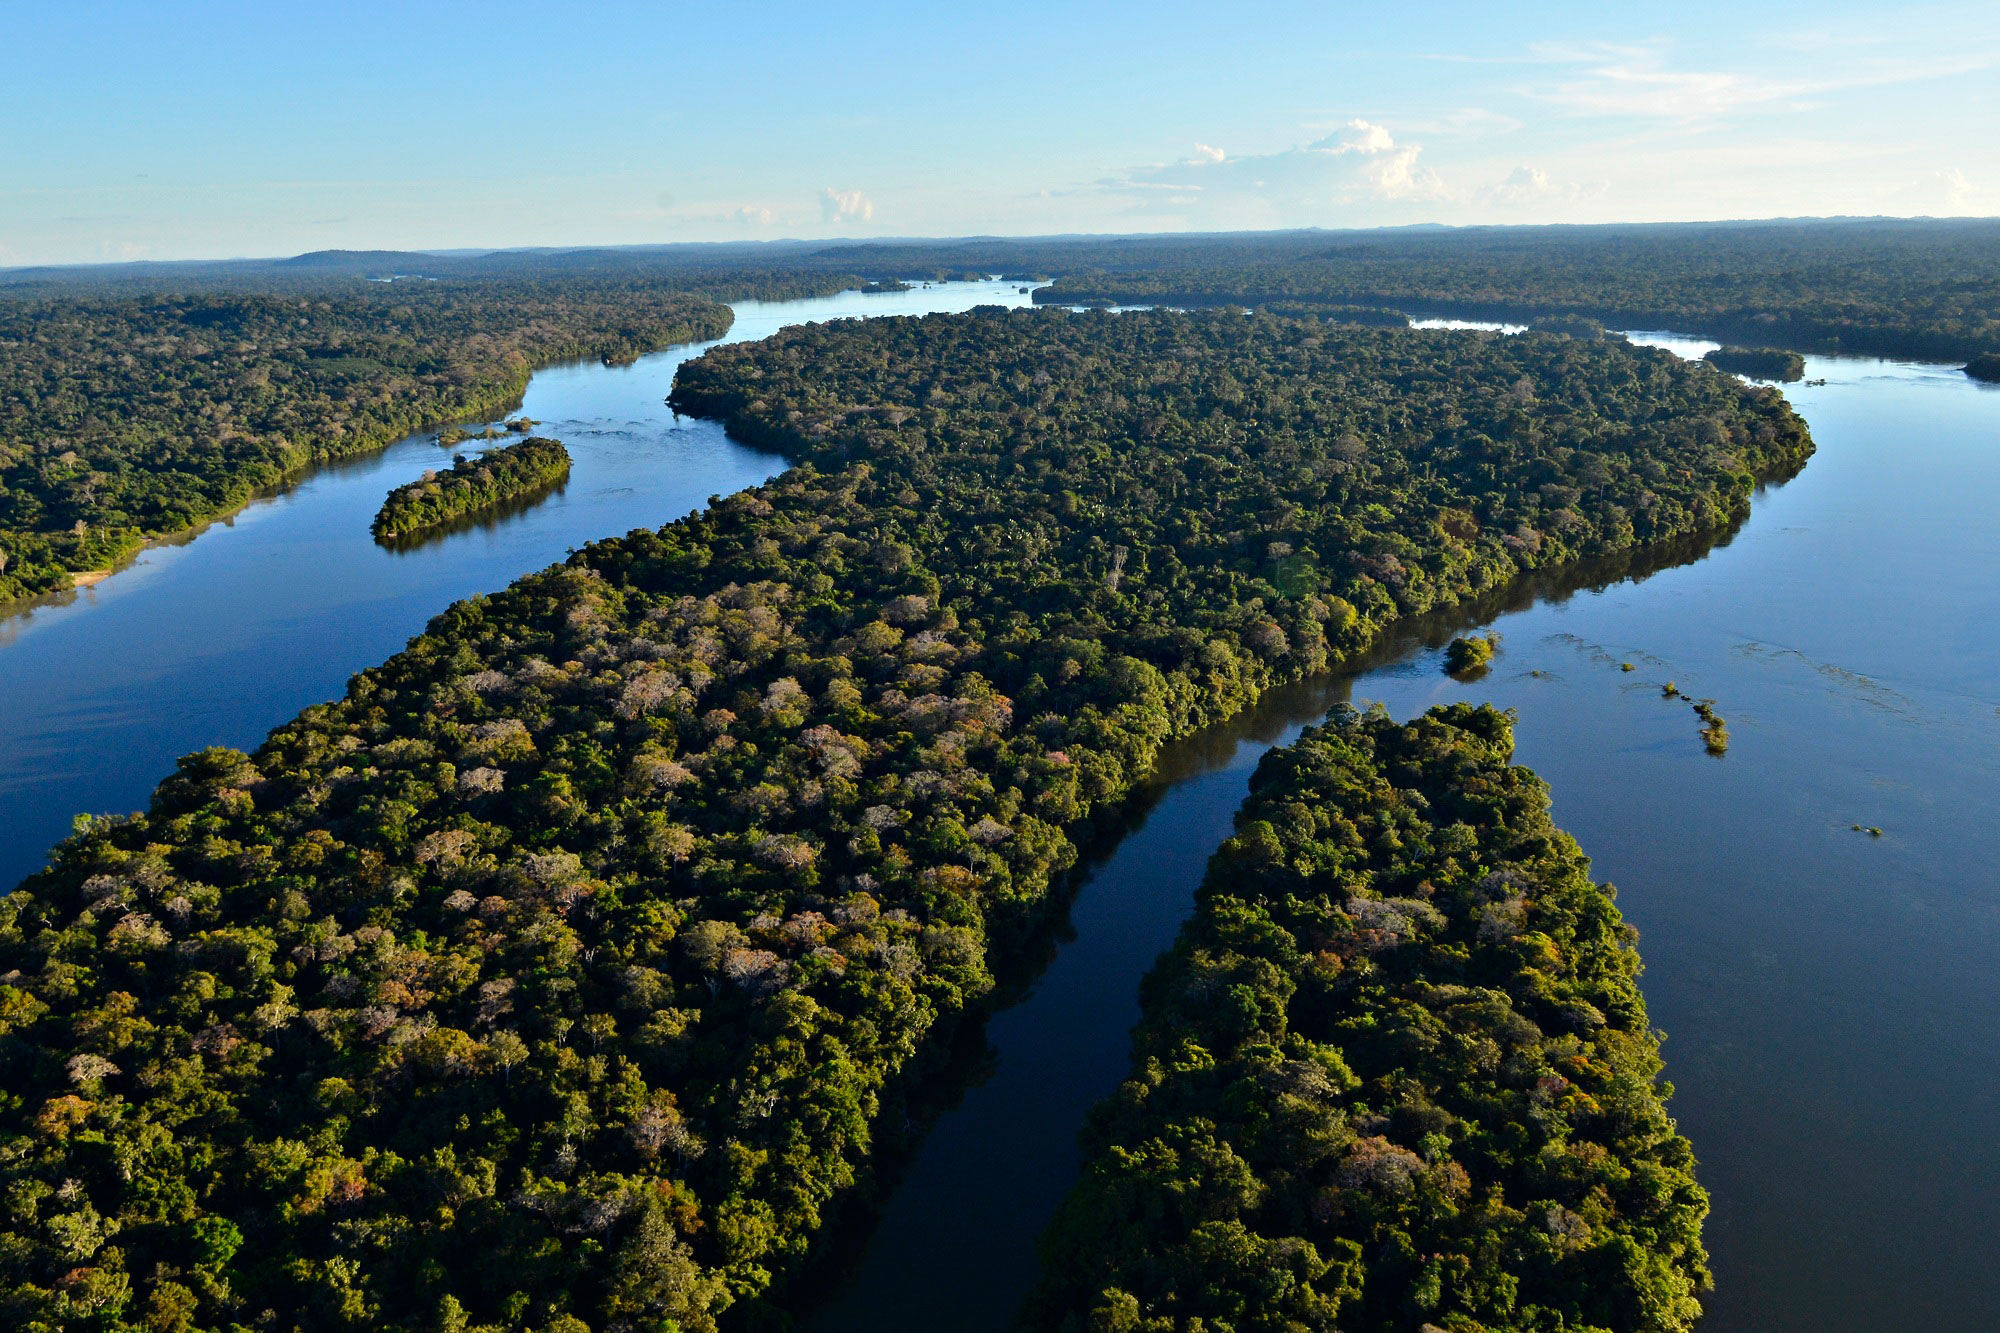 Visão aérea do Parque Nacional do Juruena, cuja existência está ameaçada devido a construção de 2 hidrelétricas no local. Foto: Adriano Gambarini/WWF-Brasil.